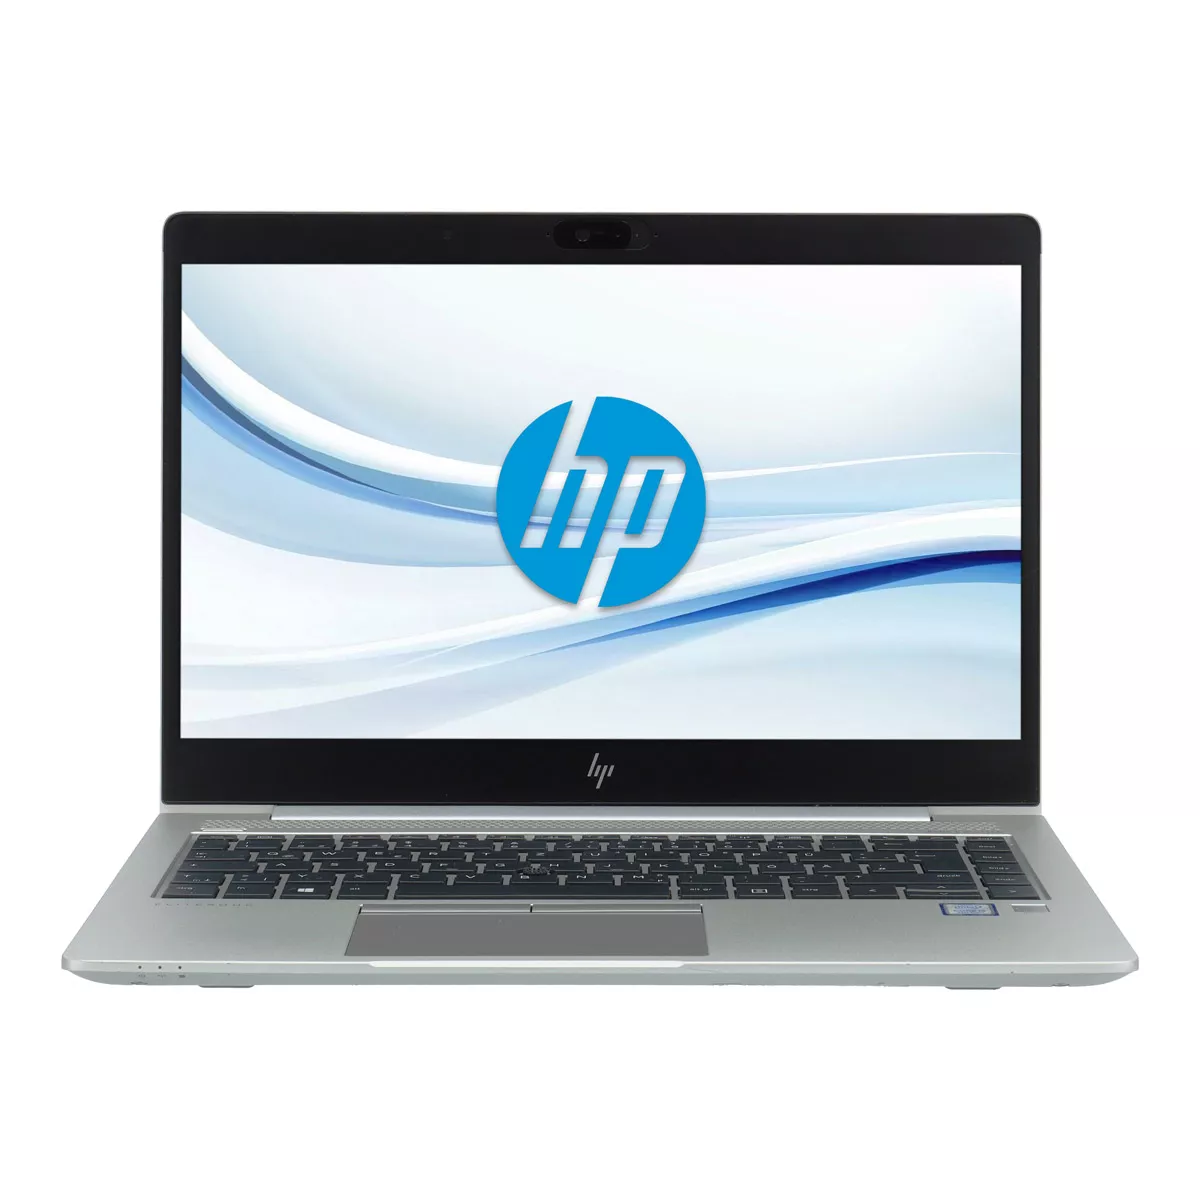 HP EliteBook 840 G5 Core i5 8250U Full-HD 240 GB M.2 SSD Webcam A